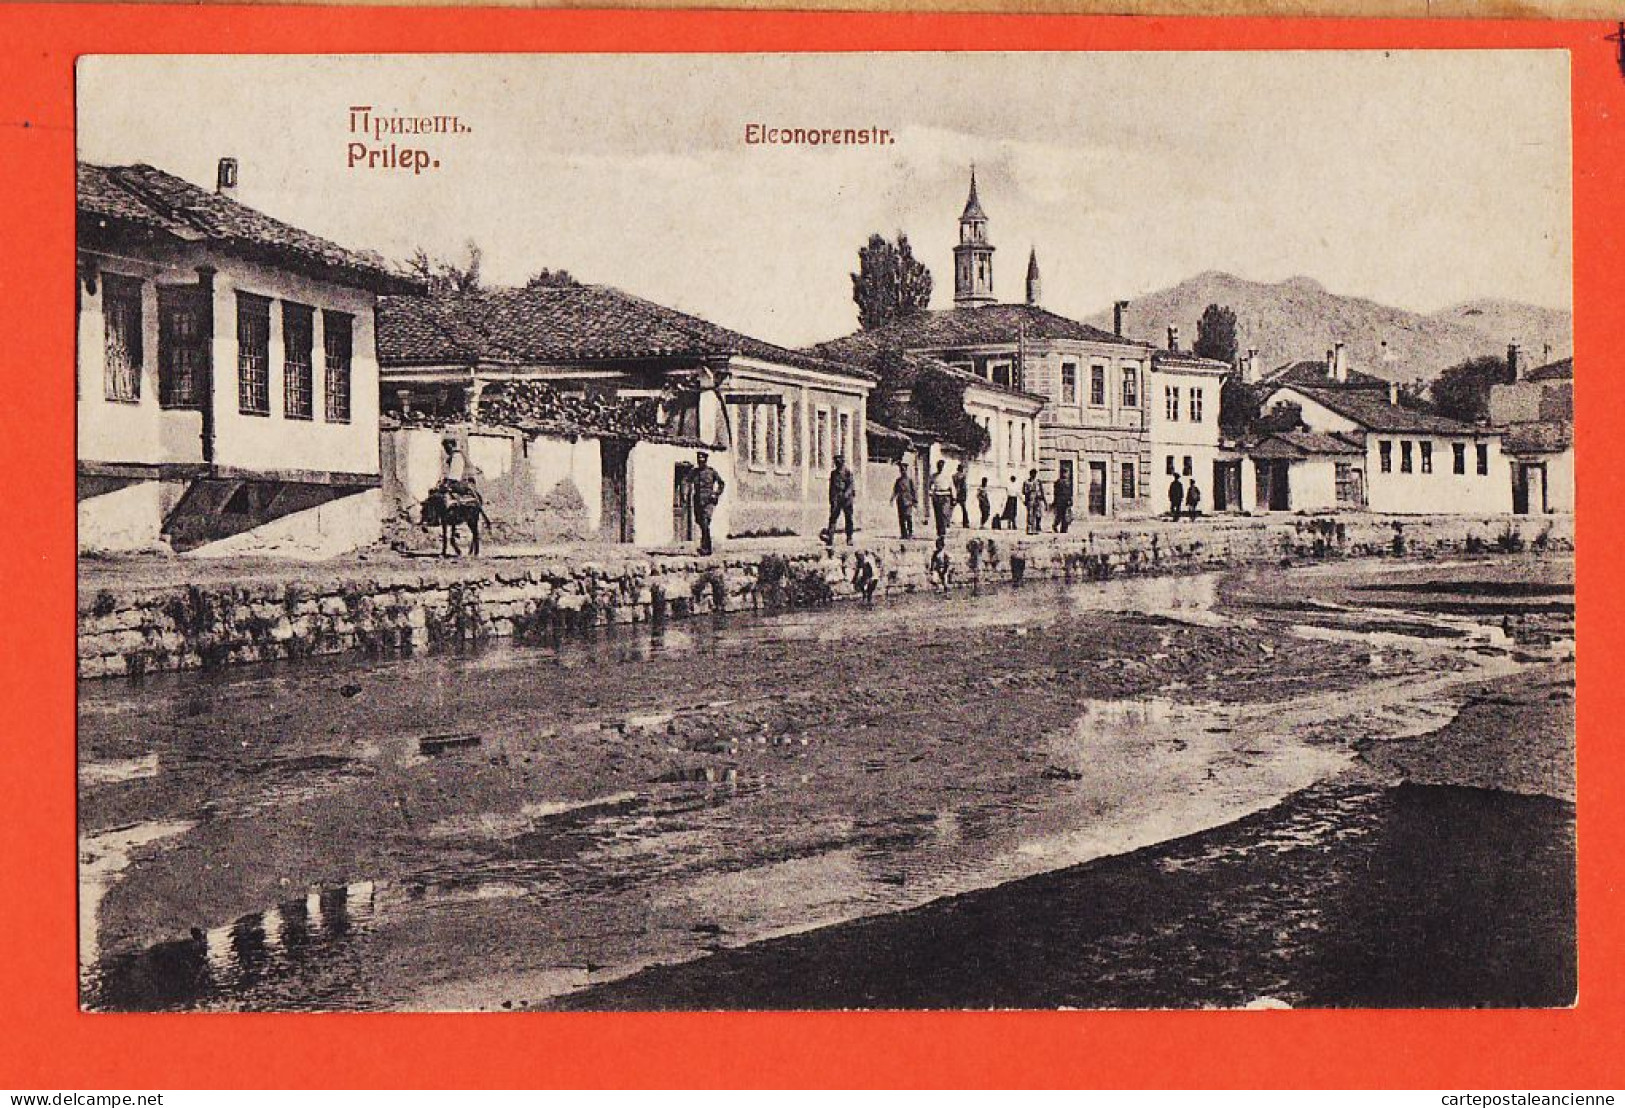 06481 / PRILEP Macedoine Eleonorenstr 1915s KNAPP Halberstadt - Nordmazedonien